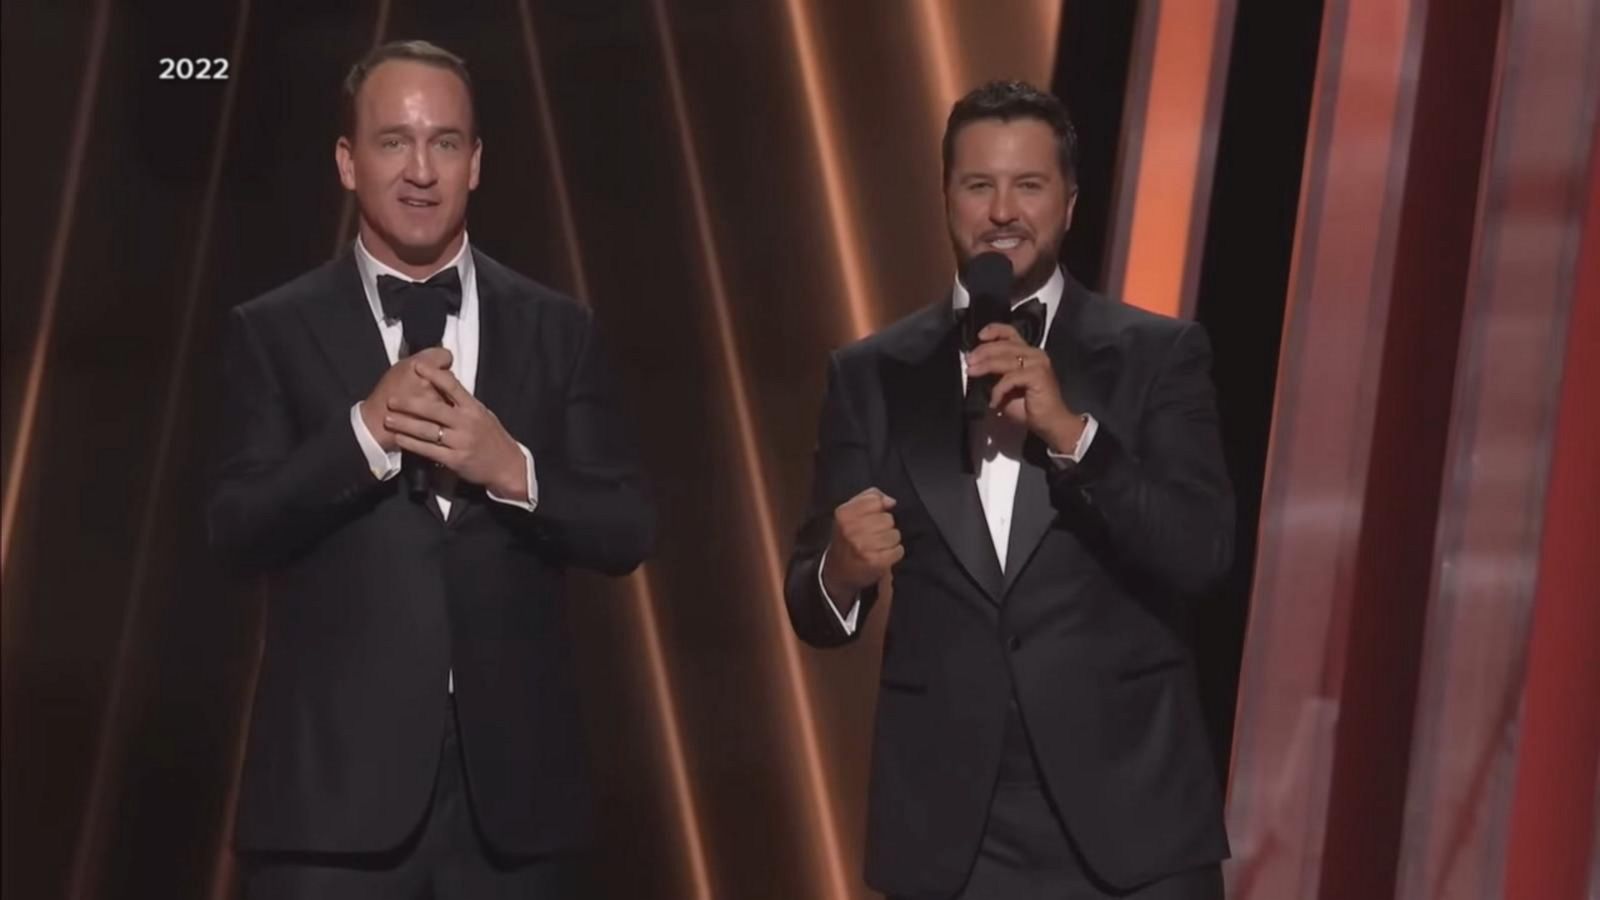 VIDEO: Luke Bryan and Peyton Manning to return as CMA Awards hosts